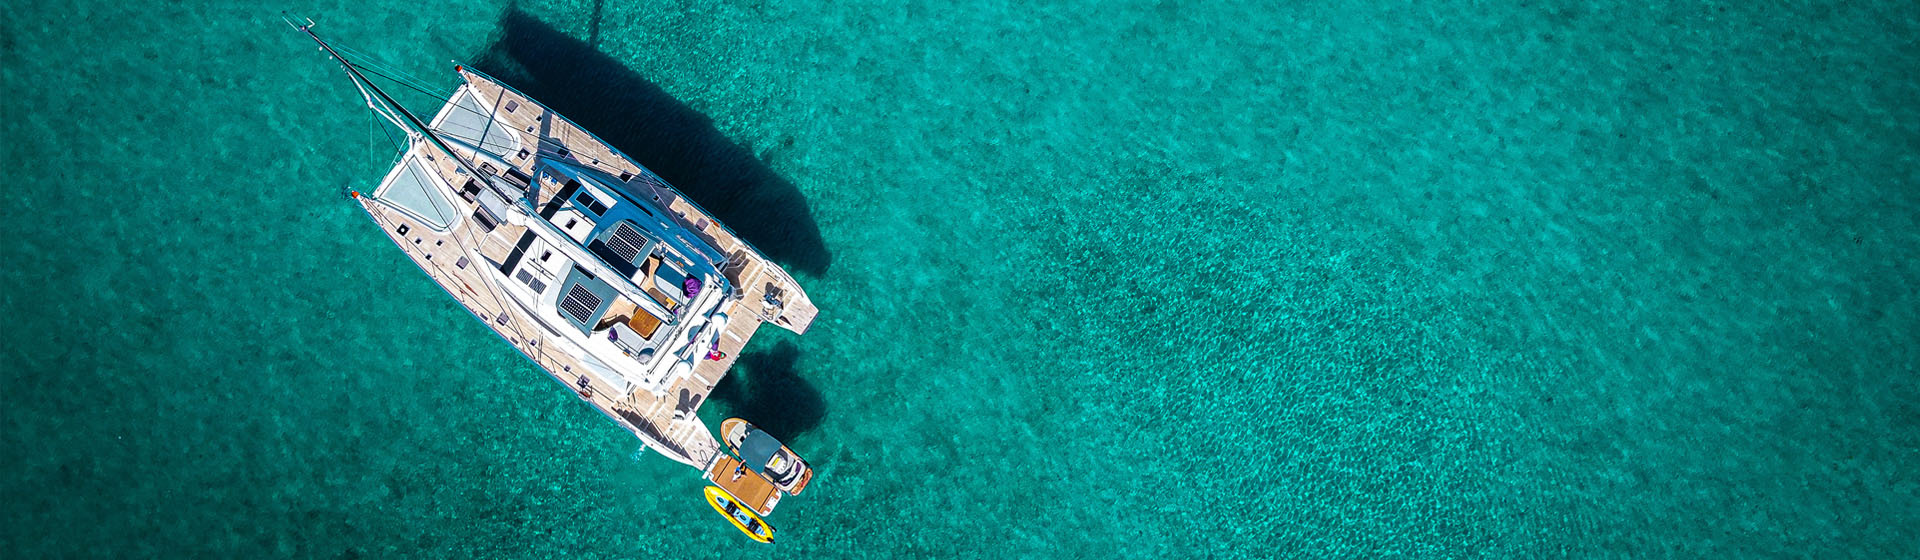 Vista aérea del catamarán de lujo Privilège Serie 740 en aguas tranquilas de color azul tropical